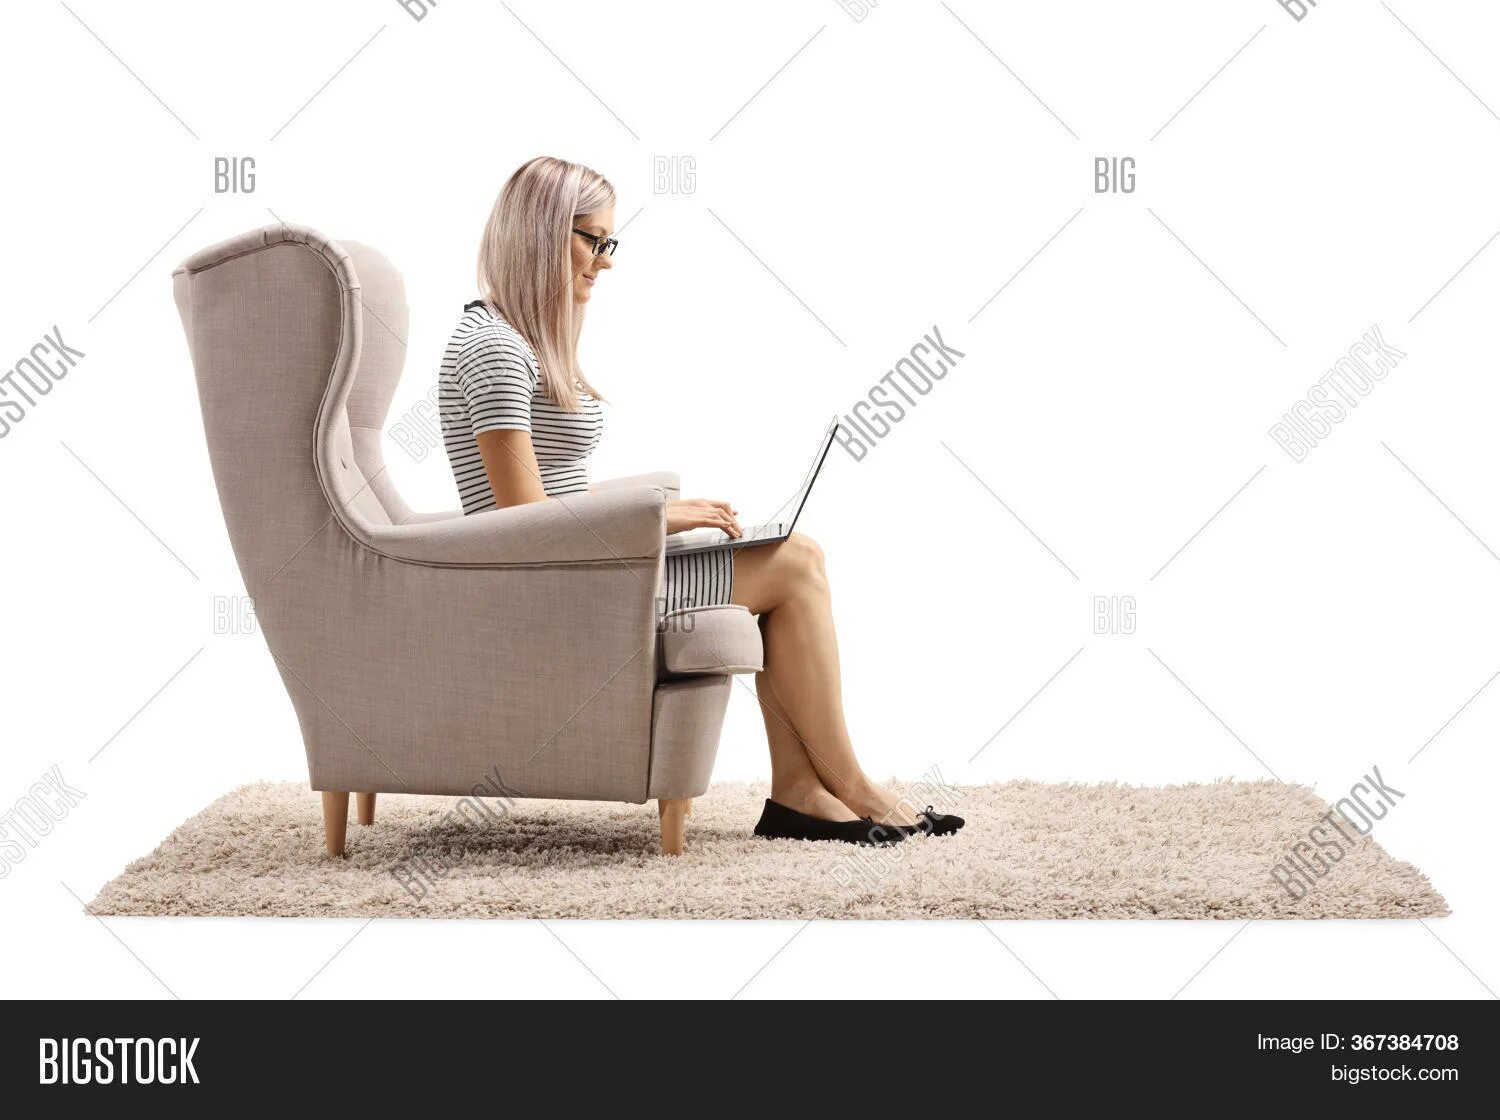 А я посижу напротив в кресле песня. Женщина в кресле с ноутбуком. Женщина в кресле, задумалась. Девушка сидит в кресле с ноутбуком. Сидит в кресле боком.